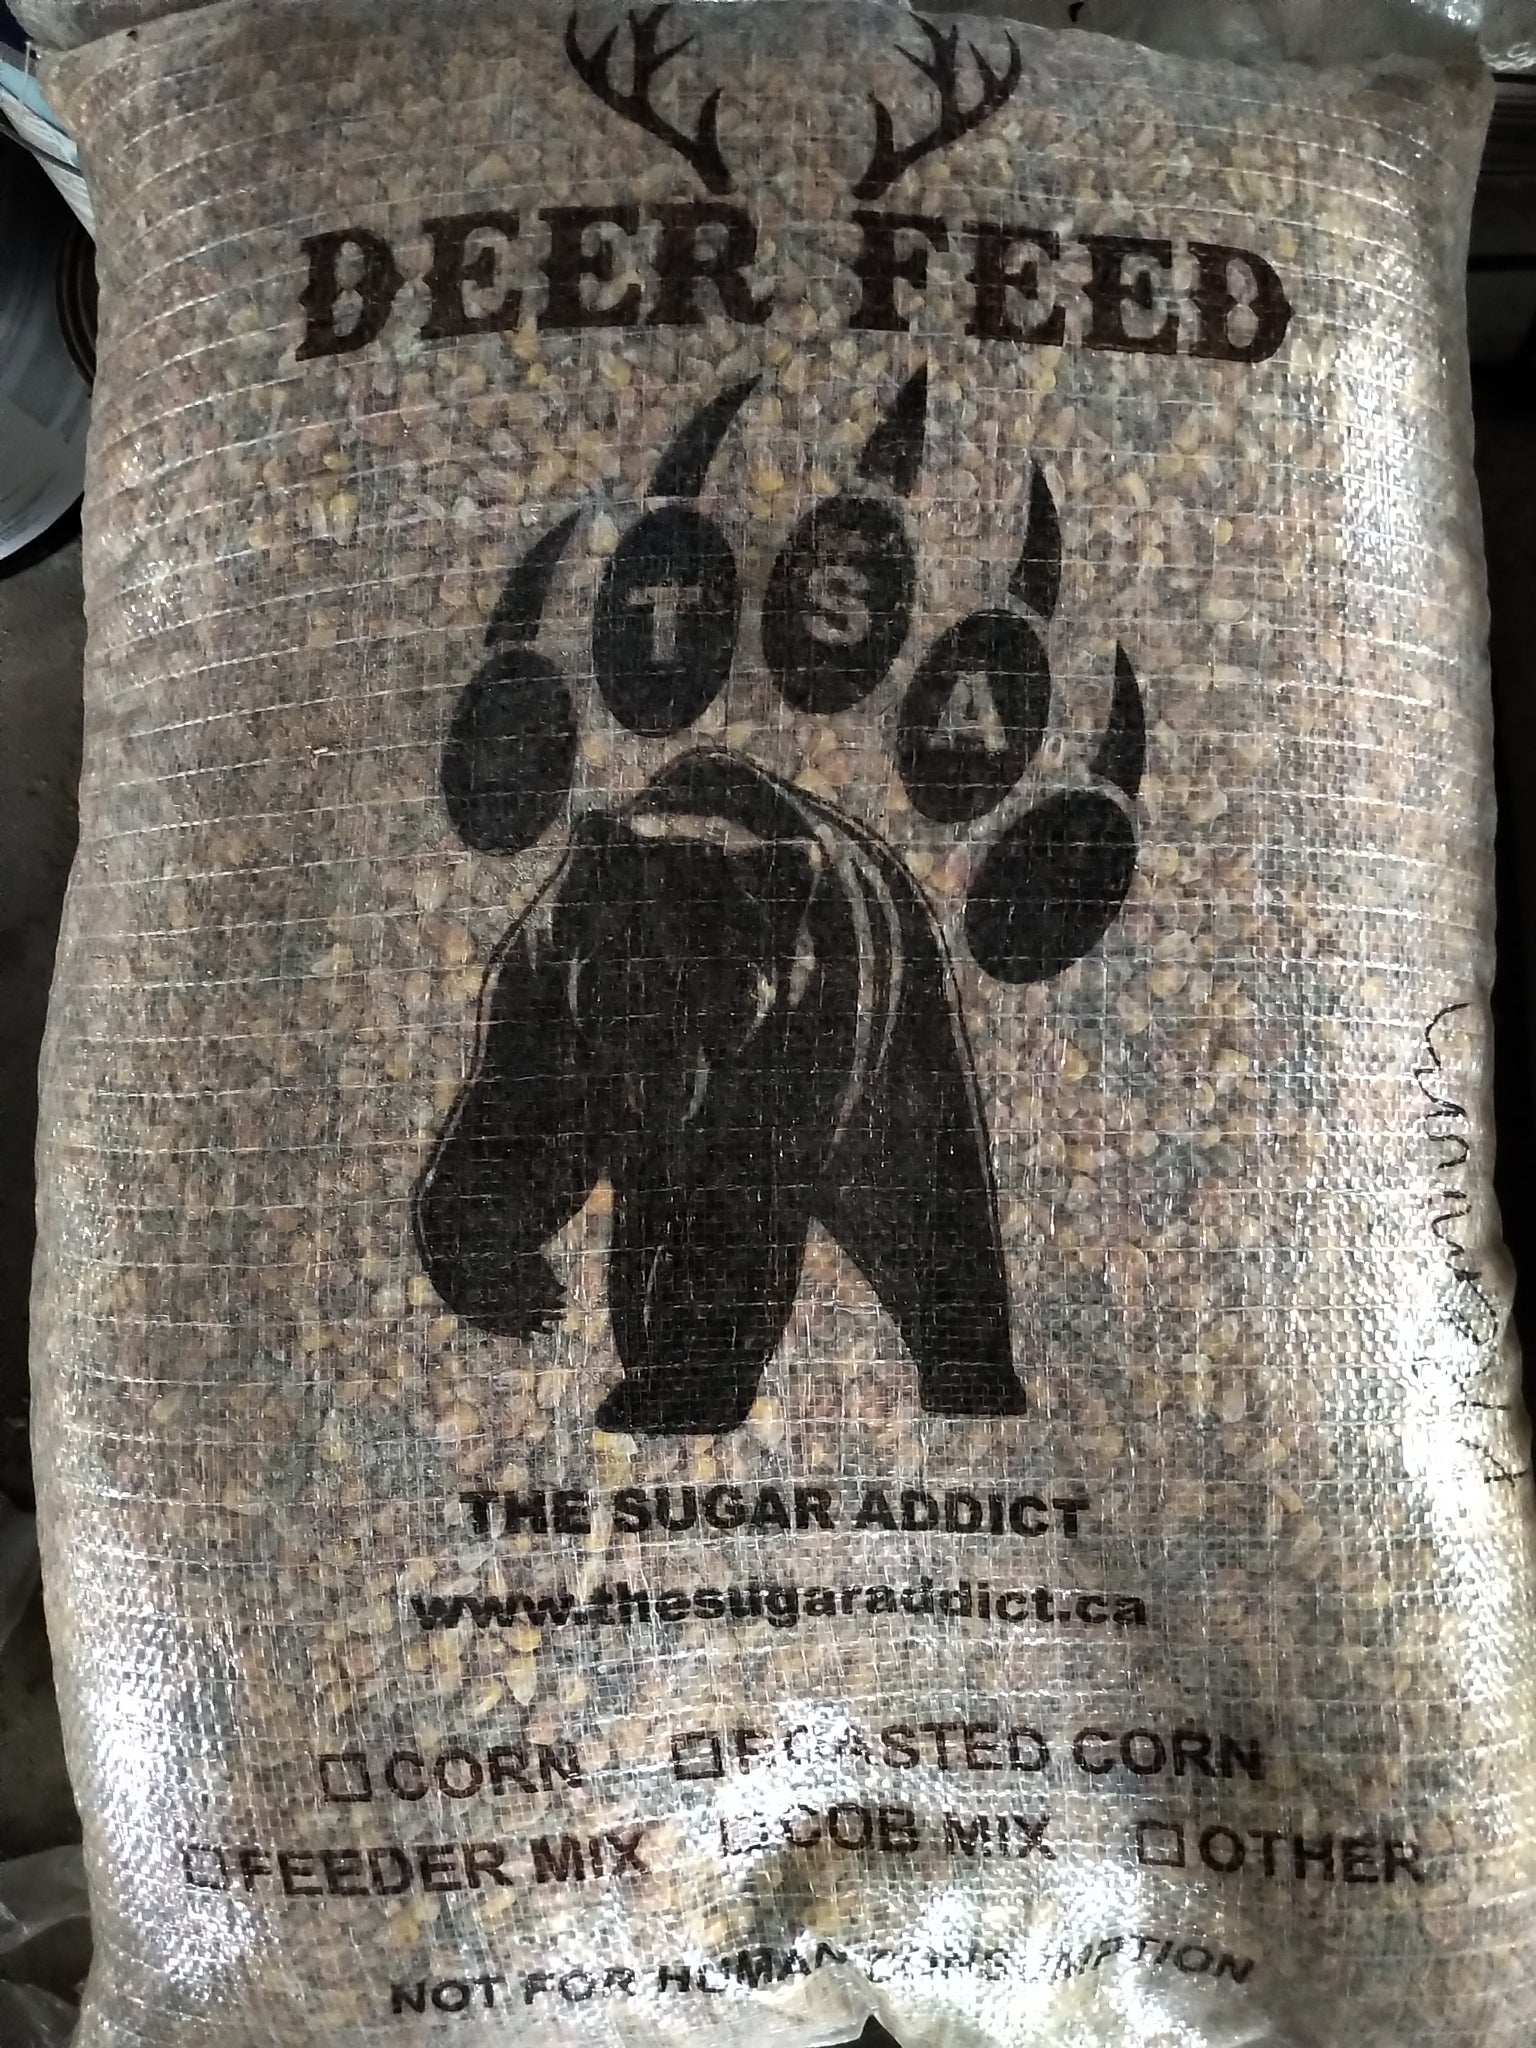 Sugar Addict  -  Premium Deer Feeder Mix